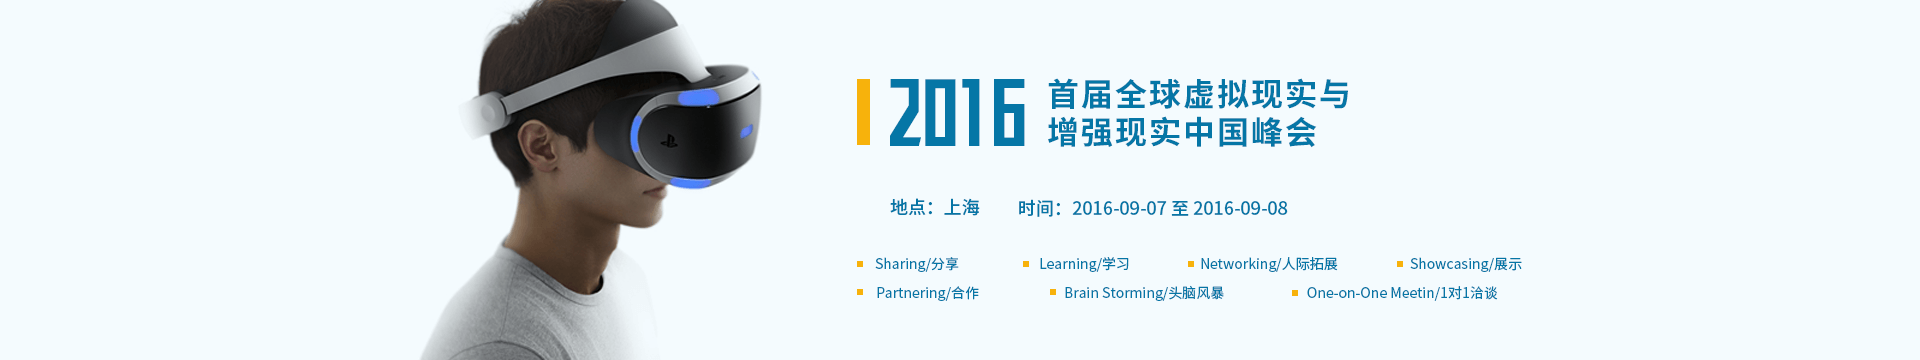 首届全球虚拟现实与增强现实中国峰会2016